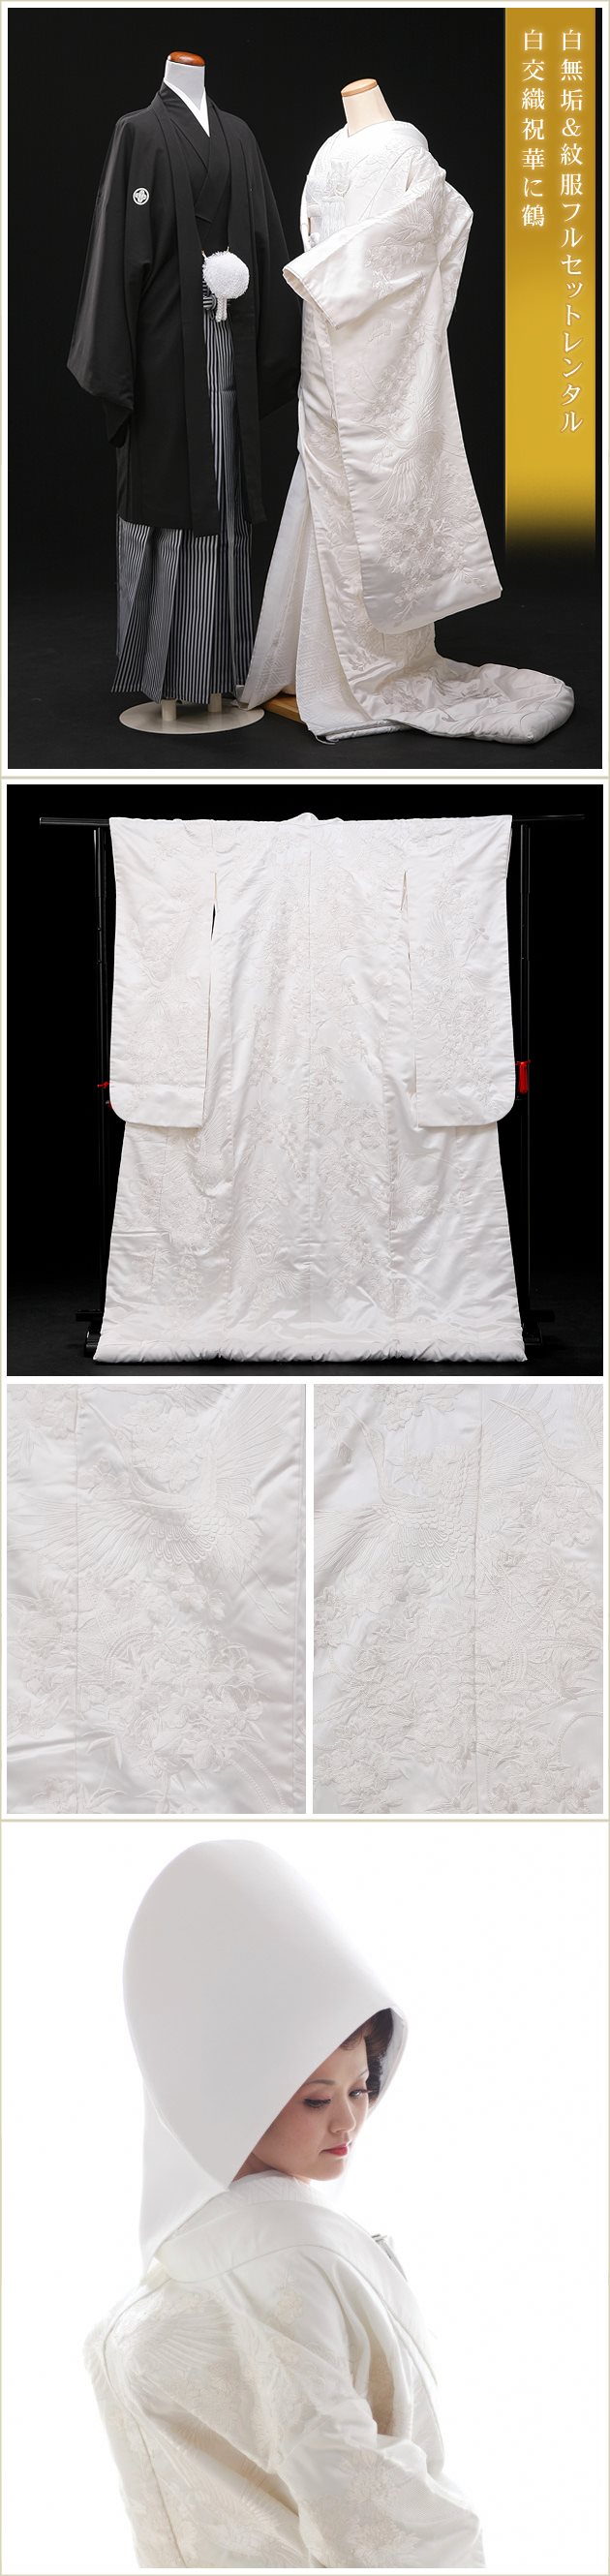 白無垢 紋付袴 フルセットレンタル 結婚式 婚礼 和装 神前式 前撮り